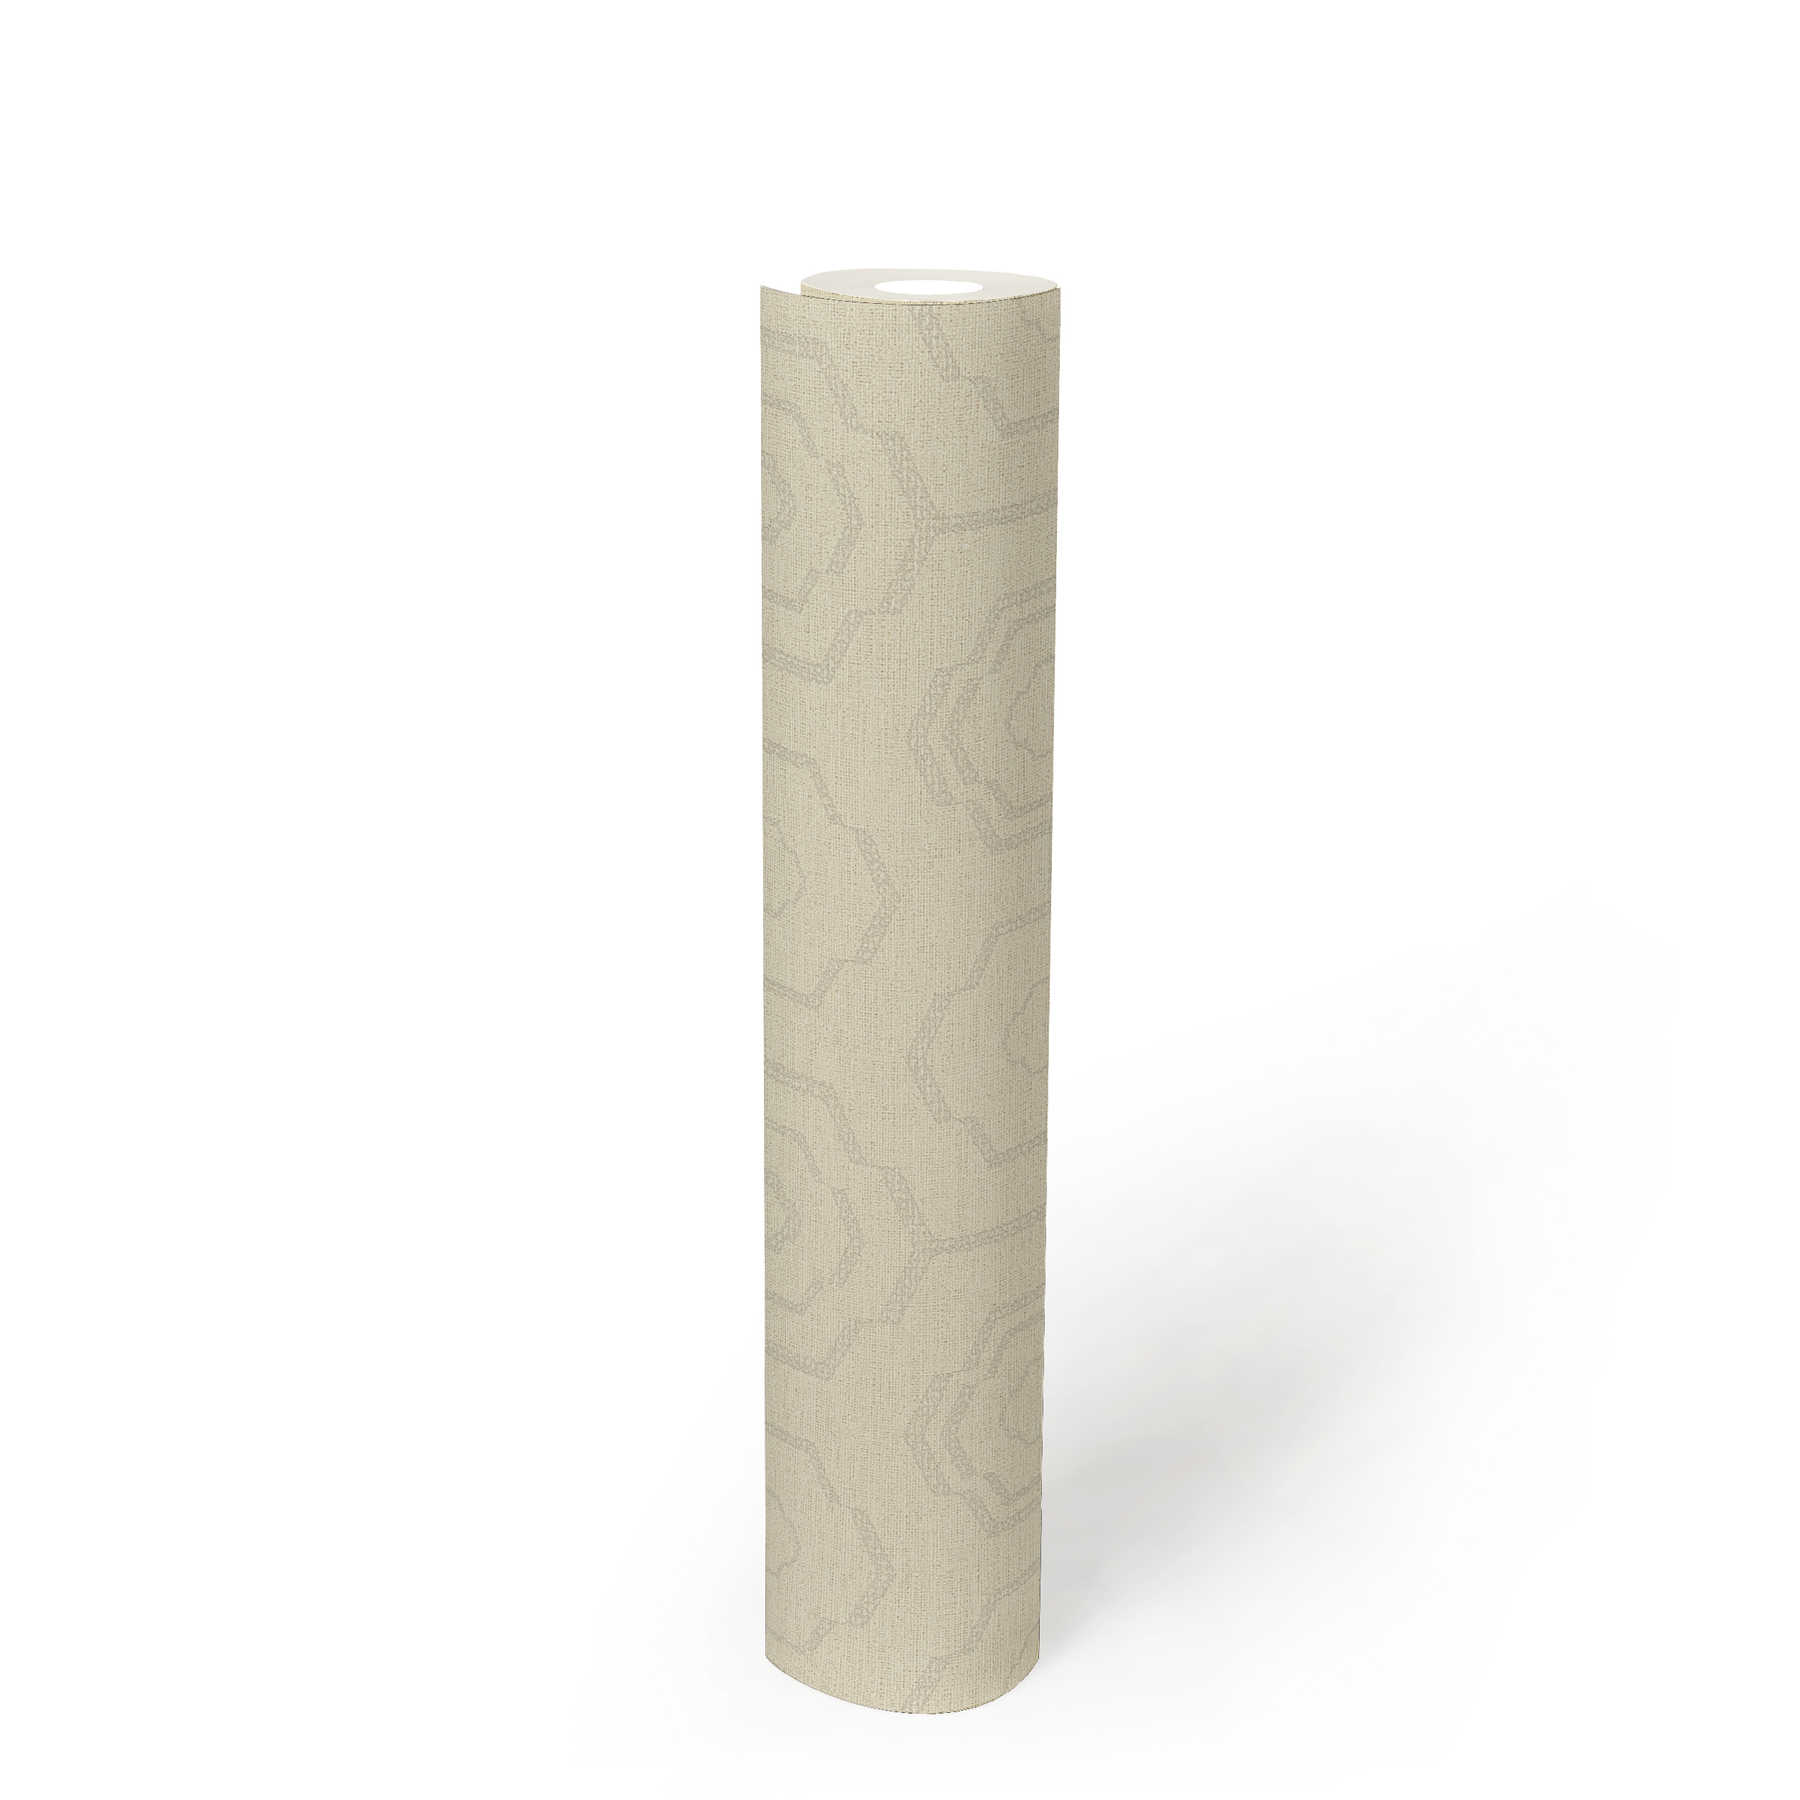             papier peint aspect textile design géométrique & effet brillant - crème, gris, beige
        